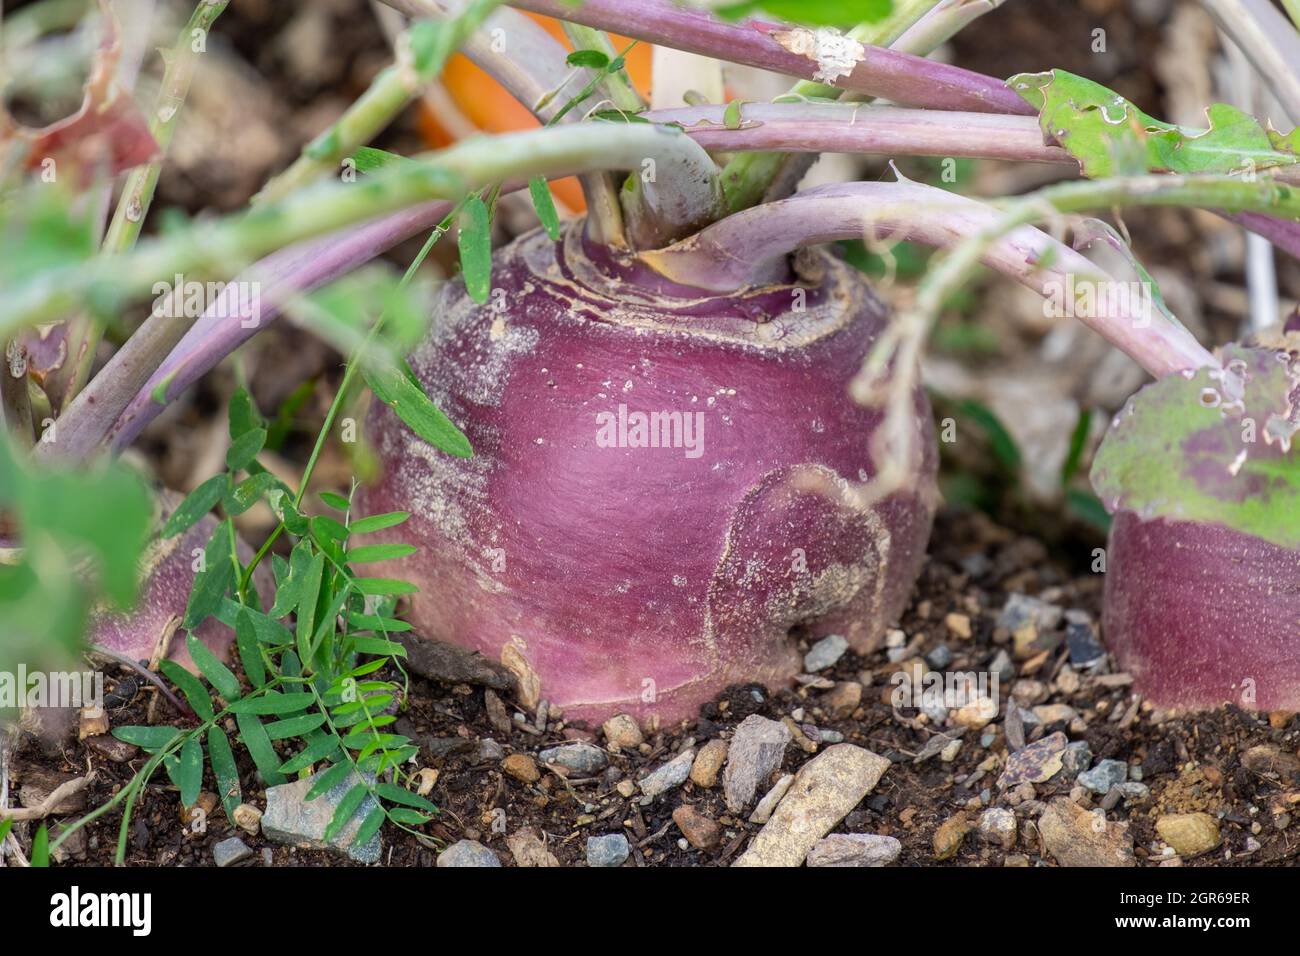 Una grande rapa rotonda organica di colore viola o rutabaga radice vegetale che cresce in un giardino rialzato letto. Il suolo è scuro e ricco. Foto Stock